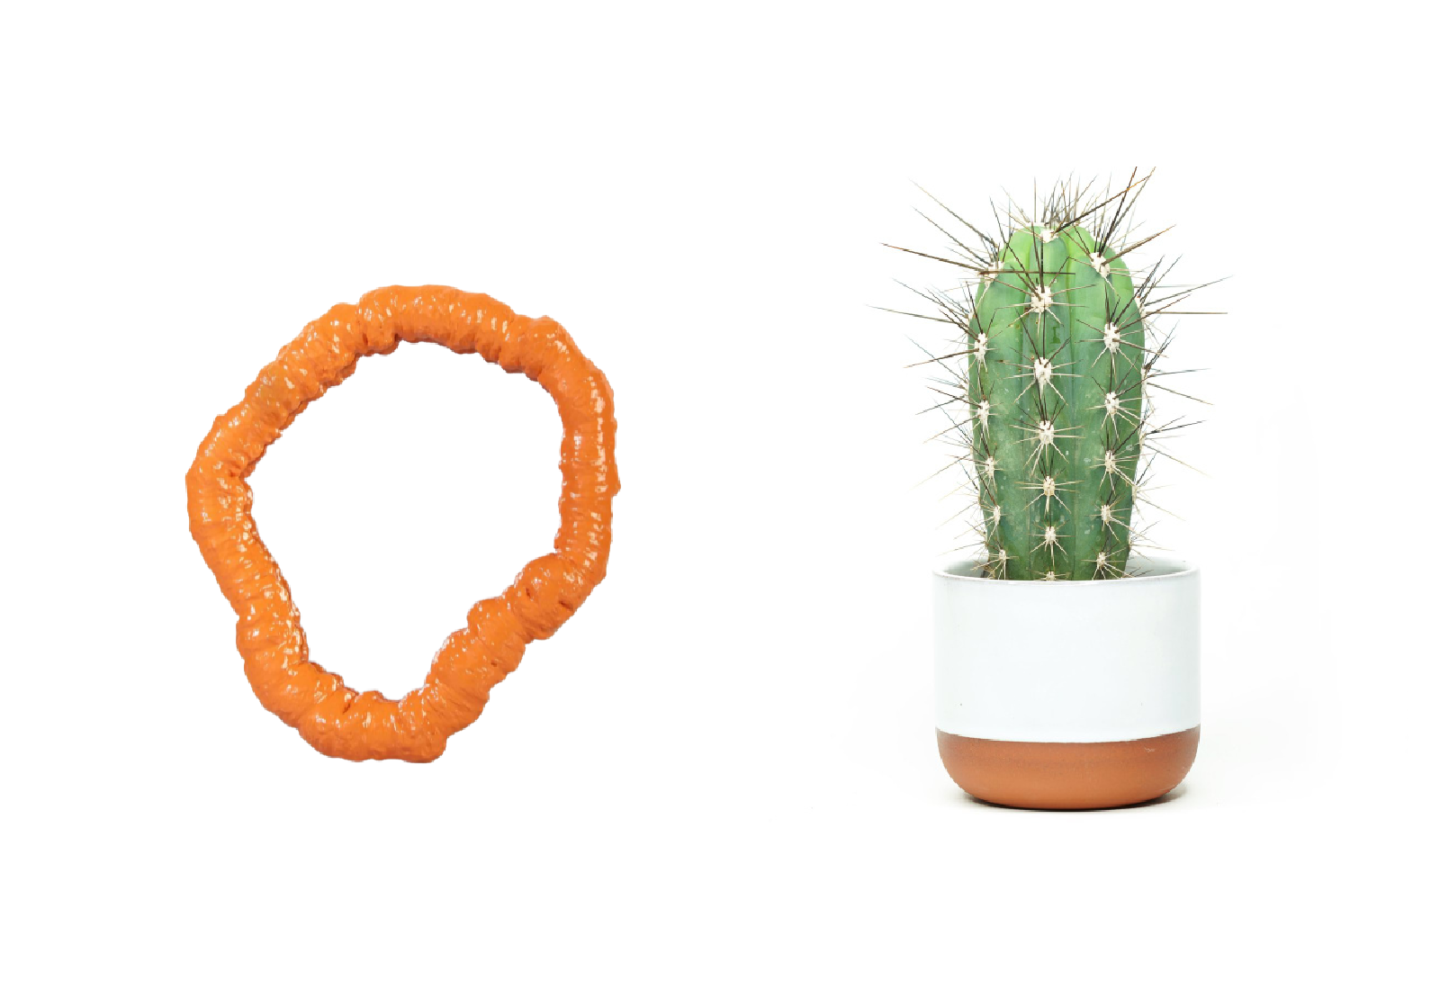 Klevering Orange Mirror and cactus